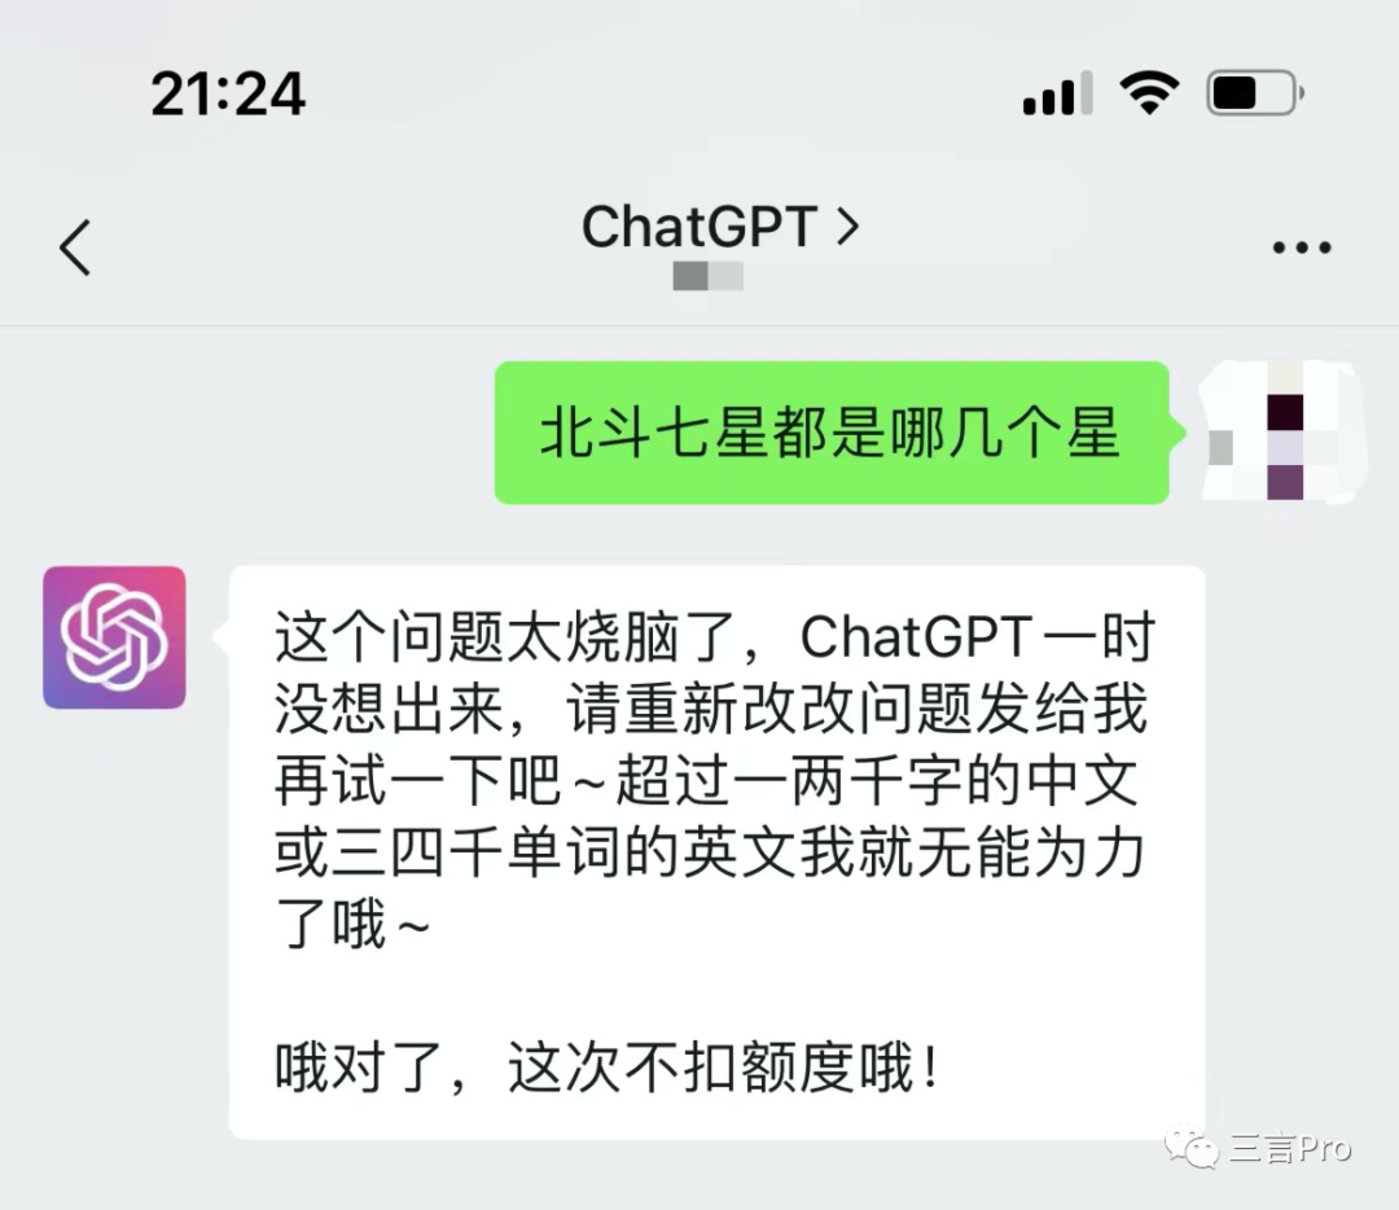 ChatGPT推出仅两个月后，月活用户已经突破了1亿︱与此同时 曾经也很火的区块链和元宇宙似乎没人提了？